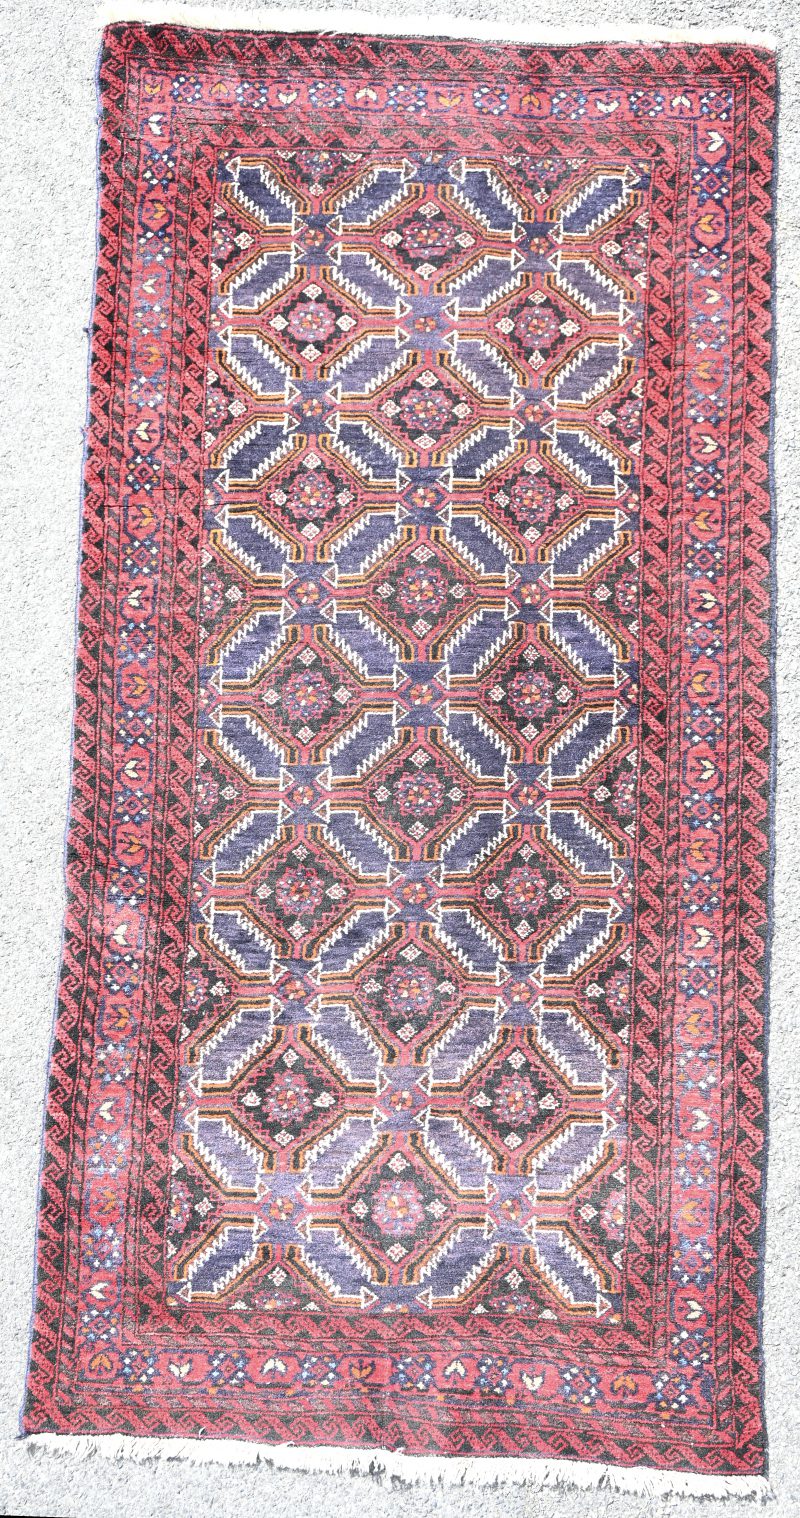 Een Iraans handgeknoopt tapijt, genummerd 56409.